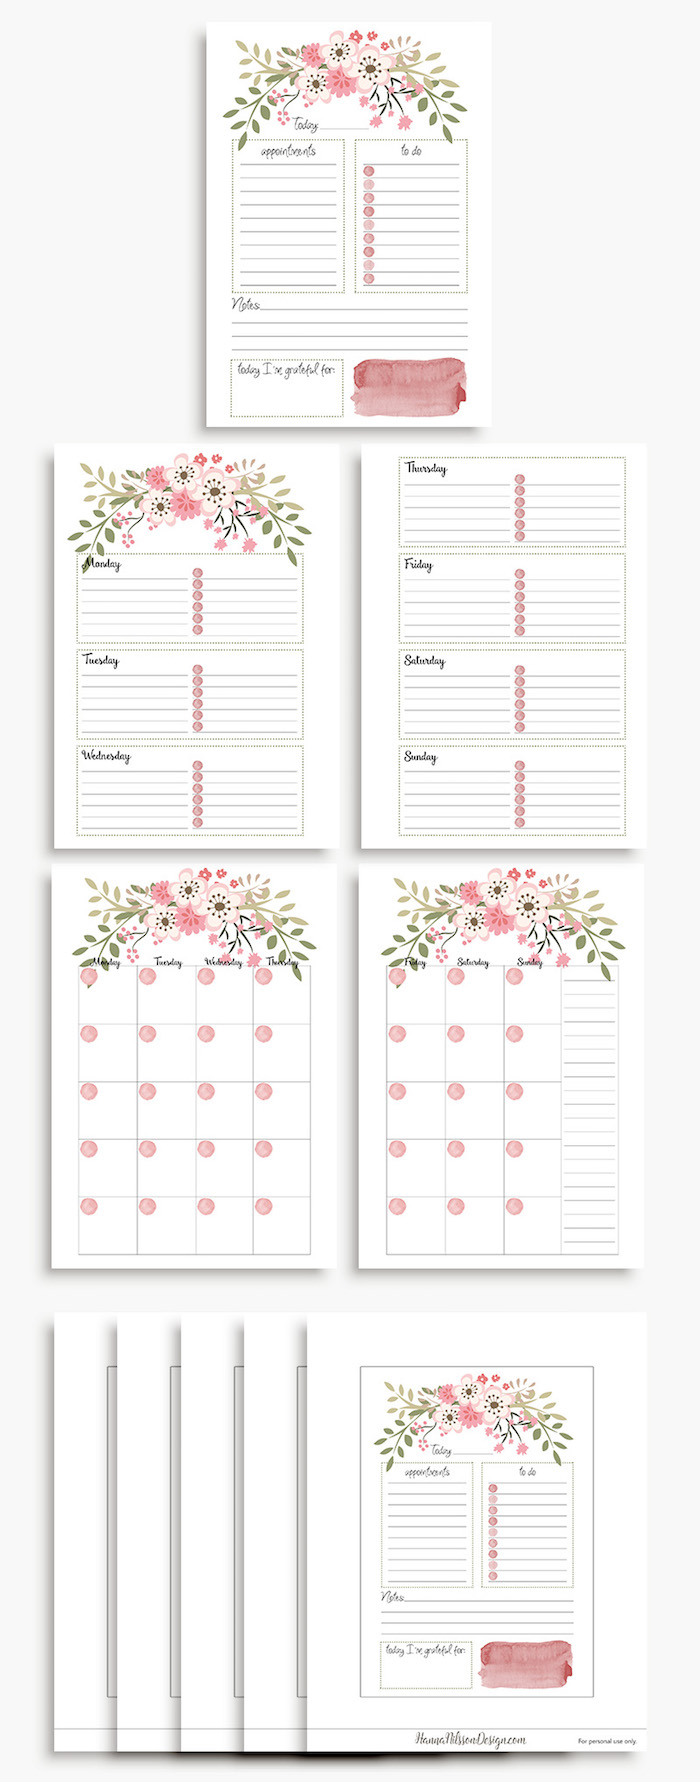 planner à imprimer floral fleurs rose printemps gratuit planning semaine quotidien hebdomadaire